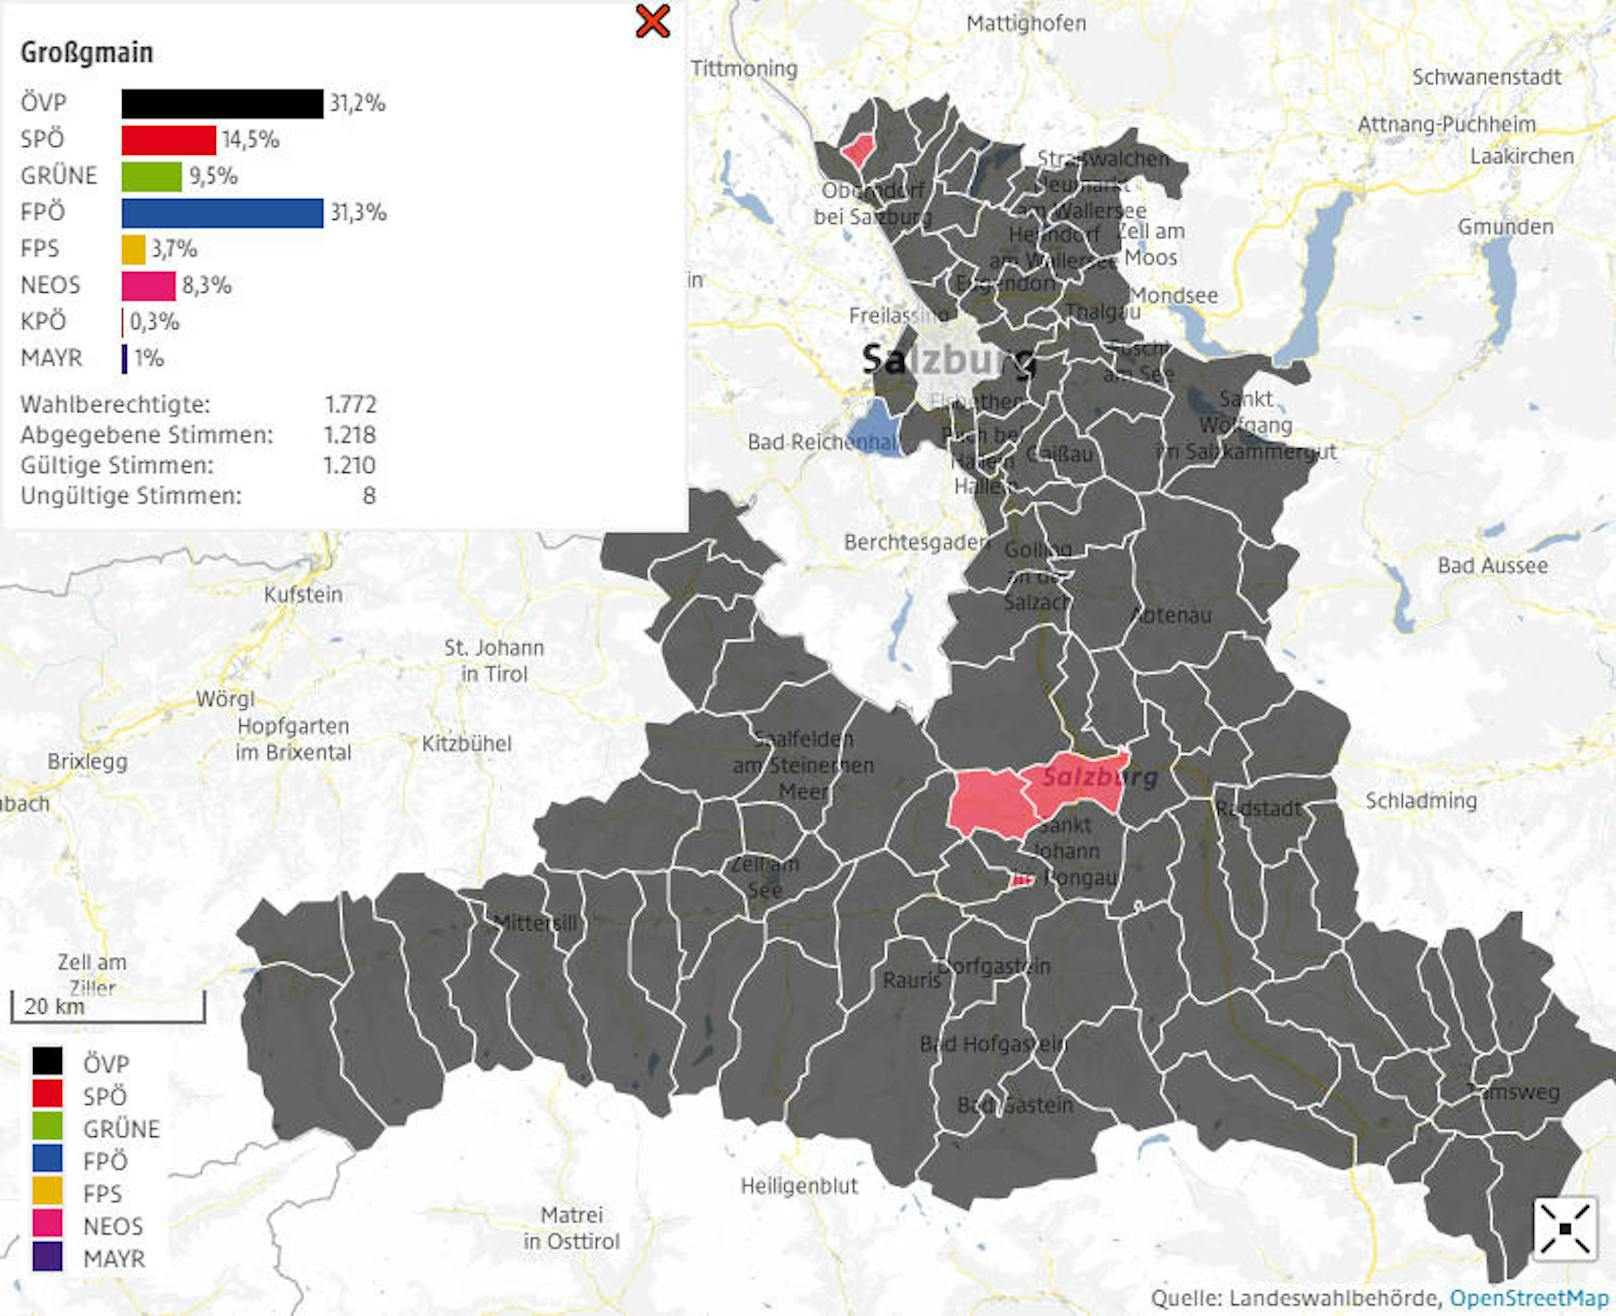 .. ist die einzige Gemeinde, die auf der politischen Karte nach der Landtagswahl am 22. April 2018 blau gefärbt ist.